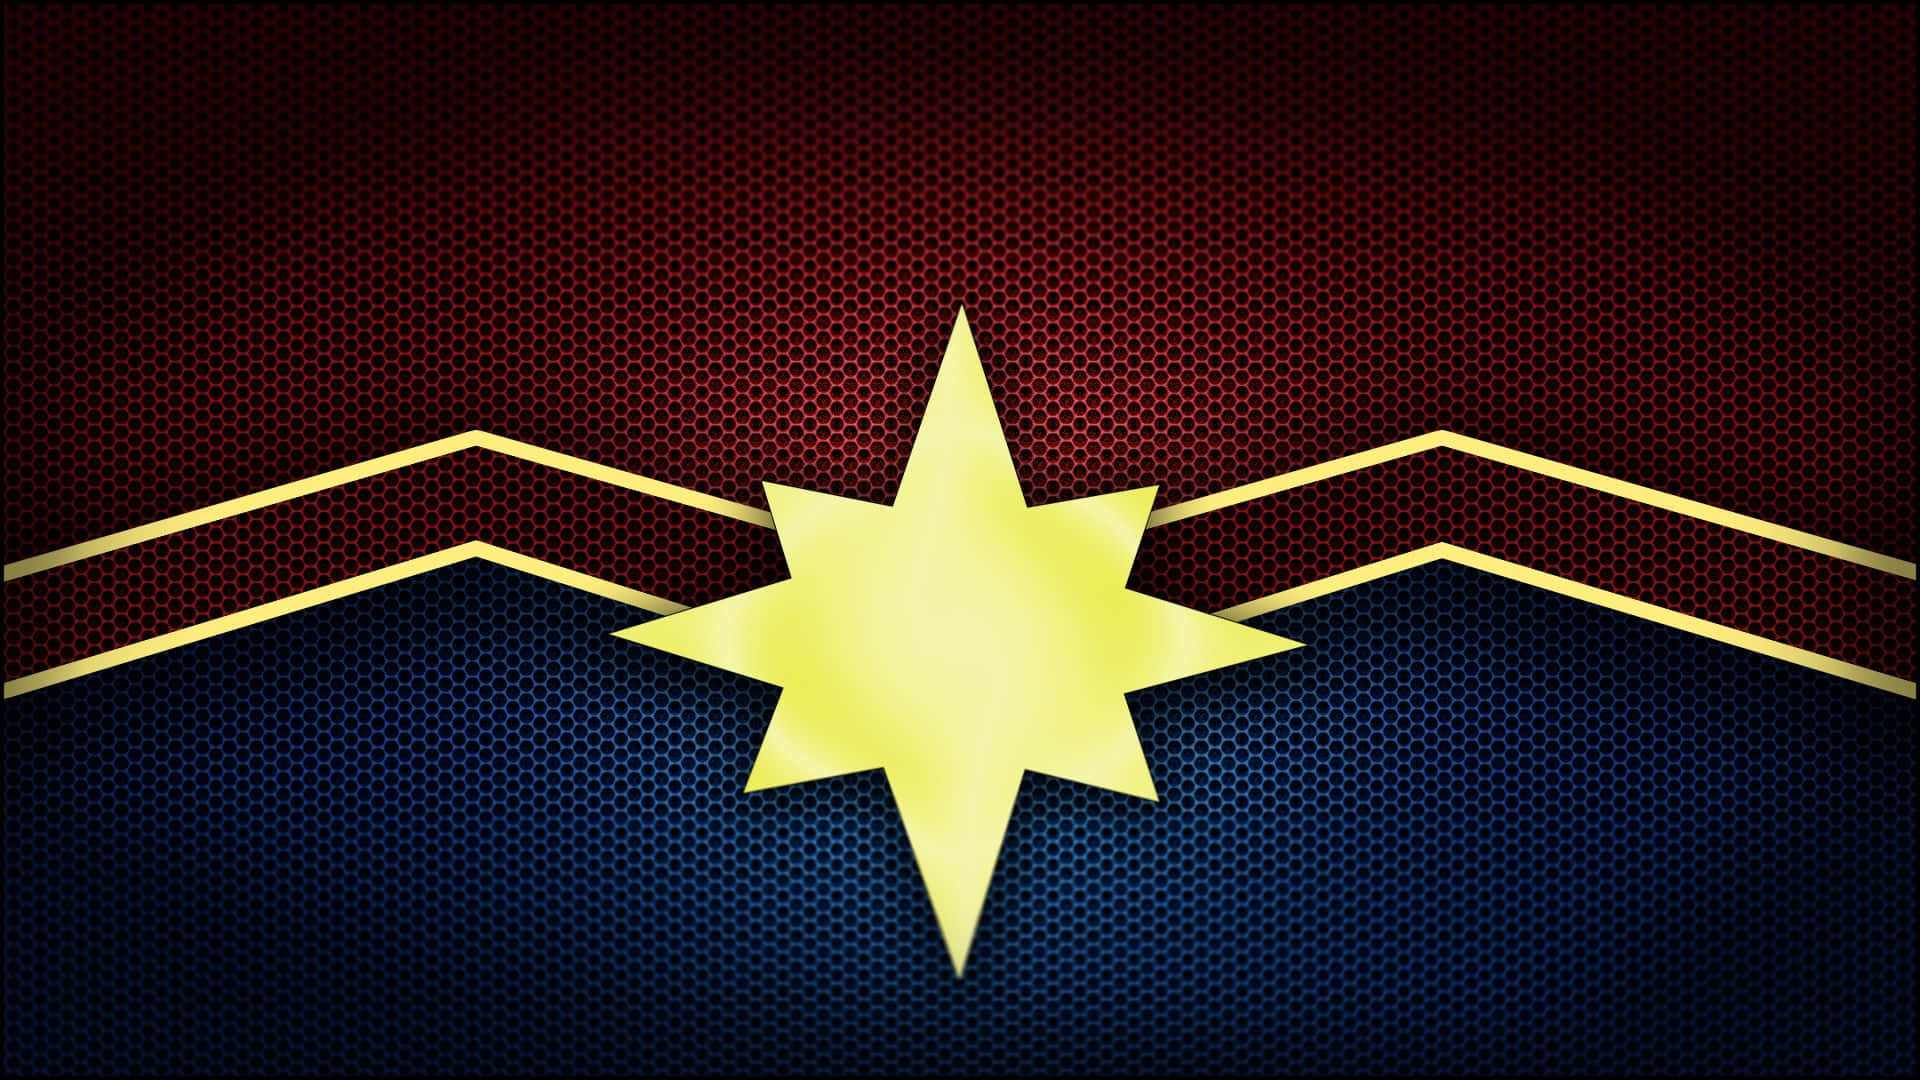 Captain Marvel Inspired Background Wallpaper